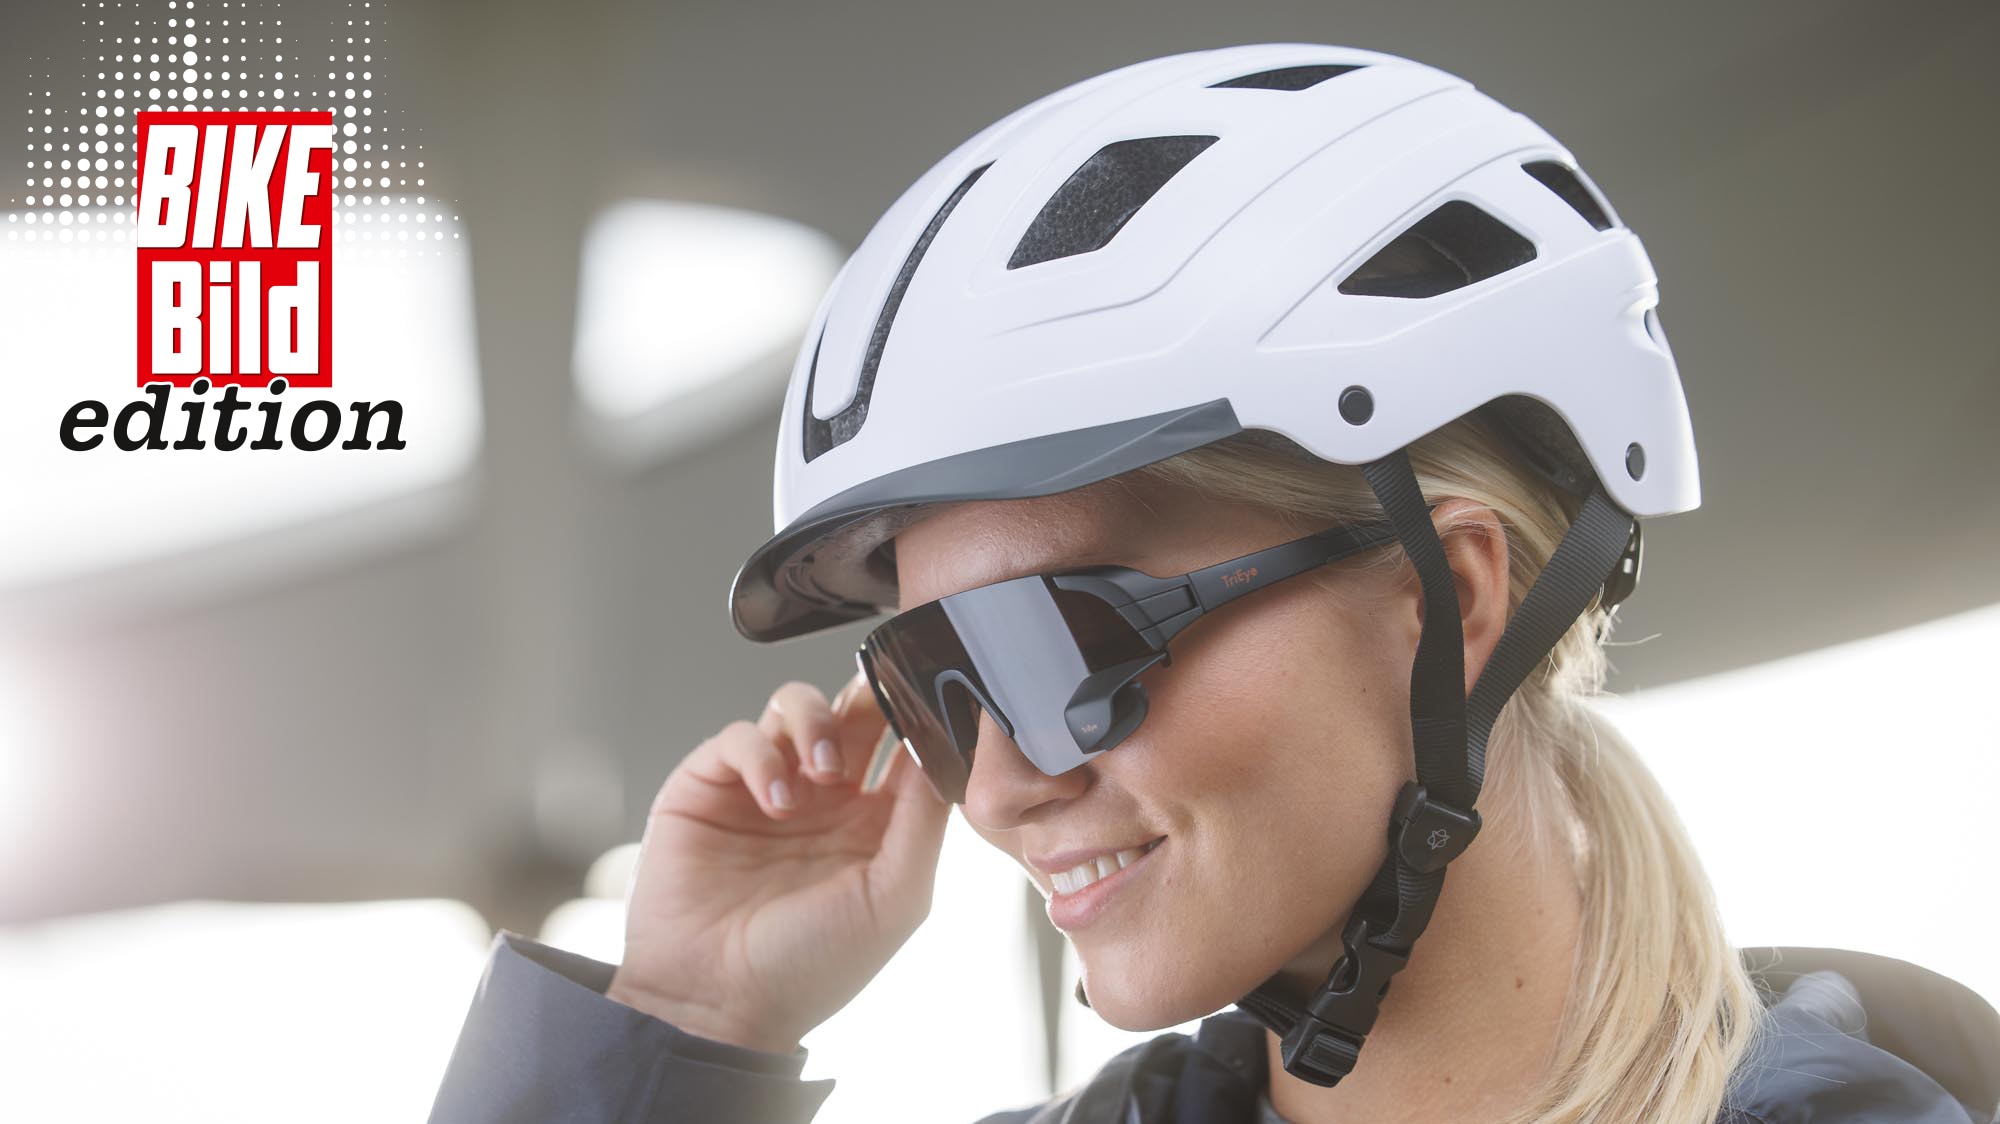 TriEye View Sport HD: Fahrradbrille mit integriertem Rückspiegel - BIKE BILD